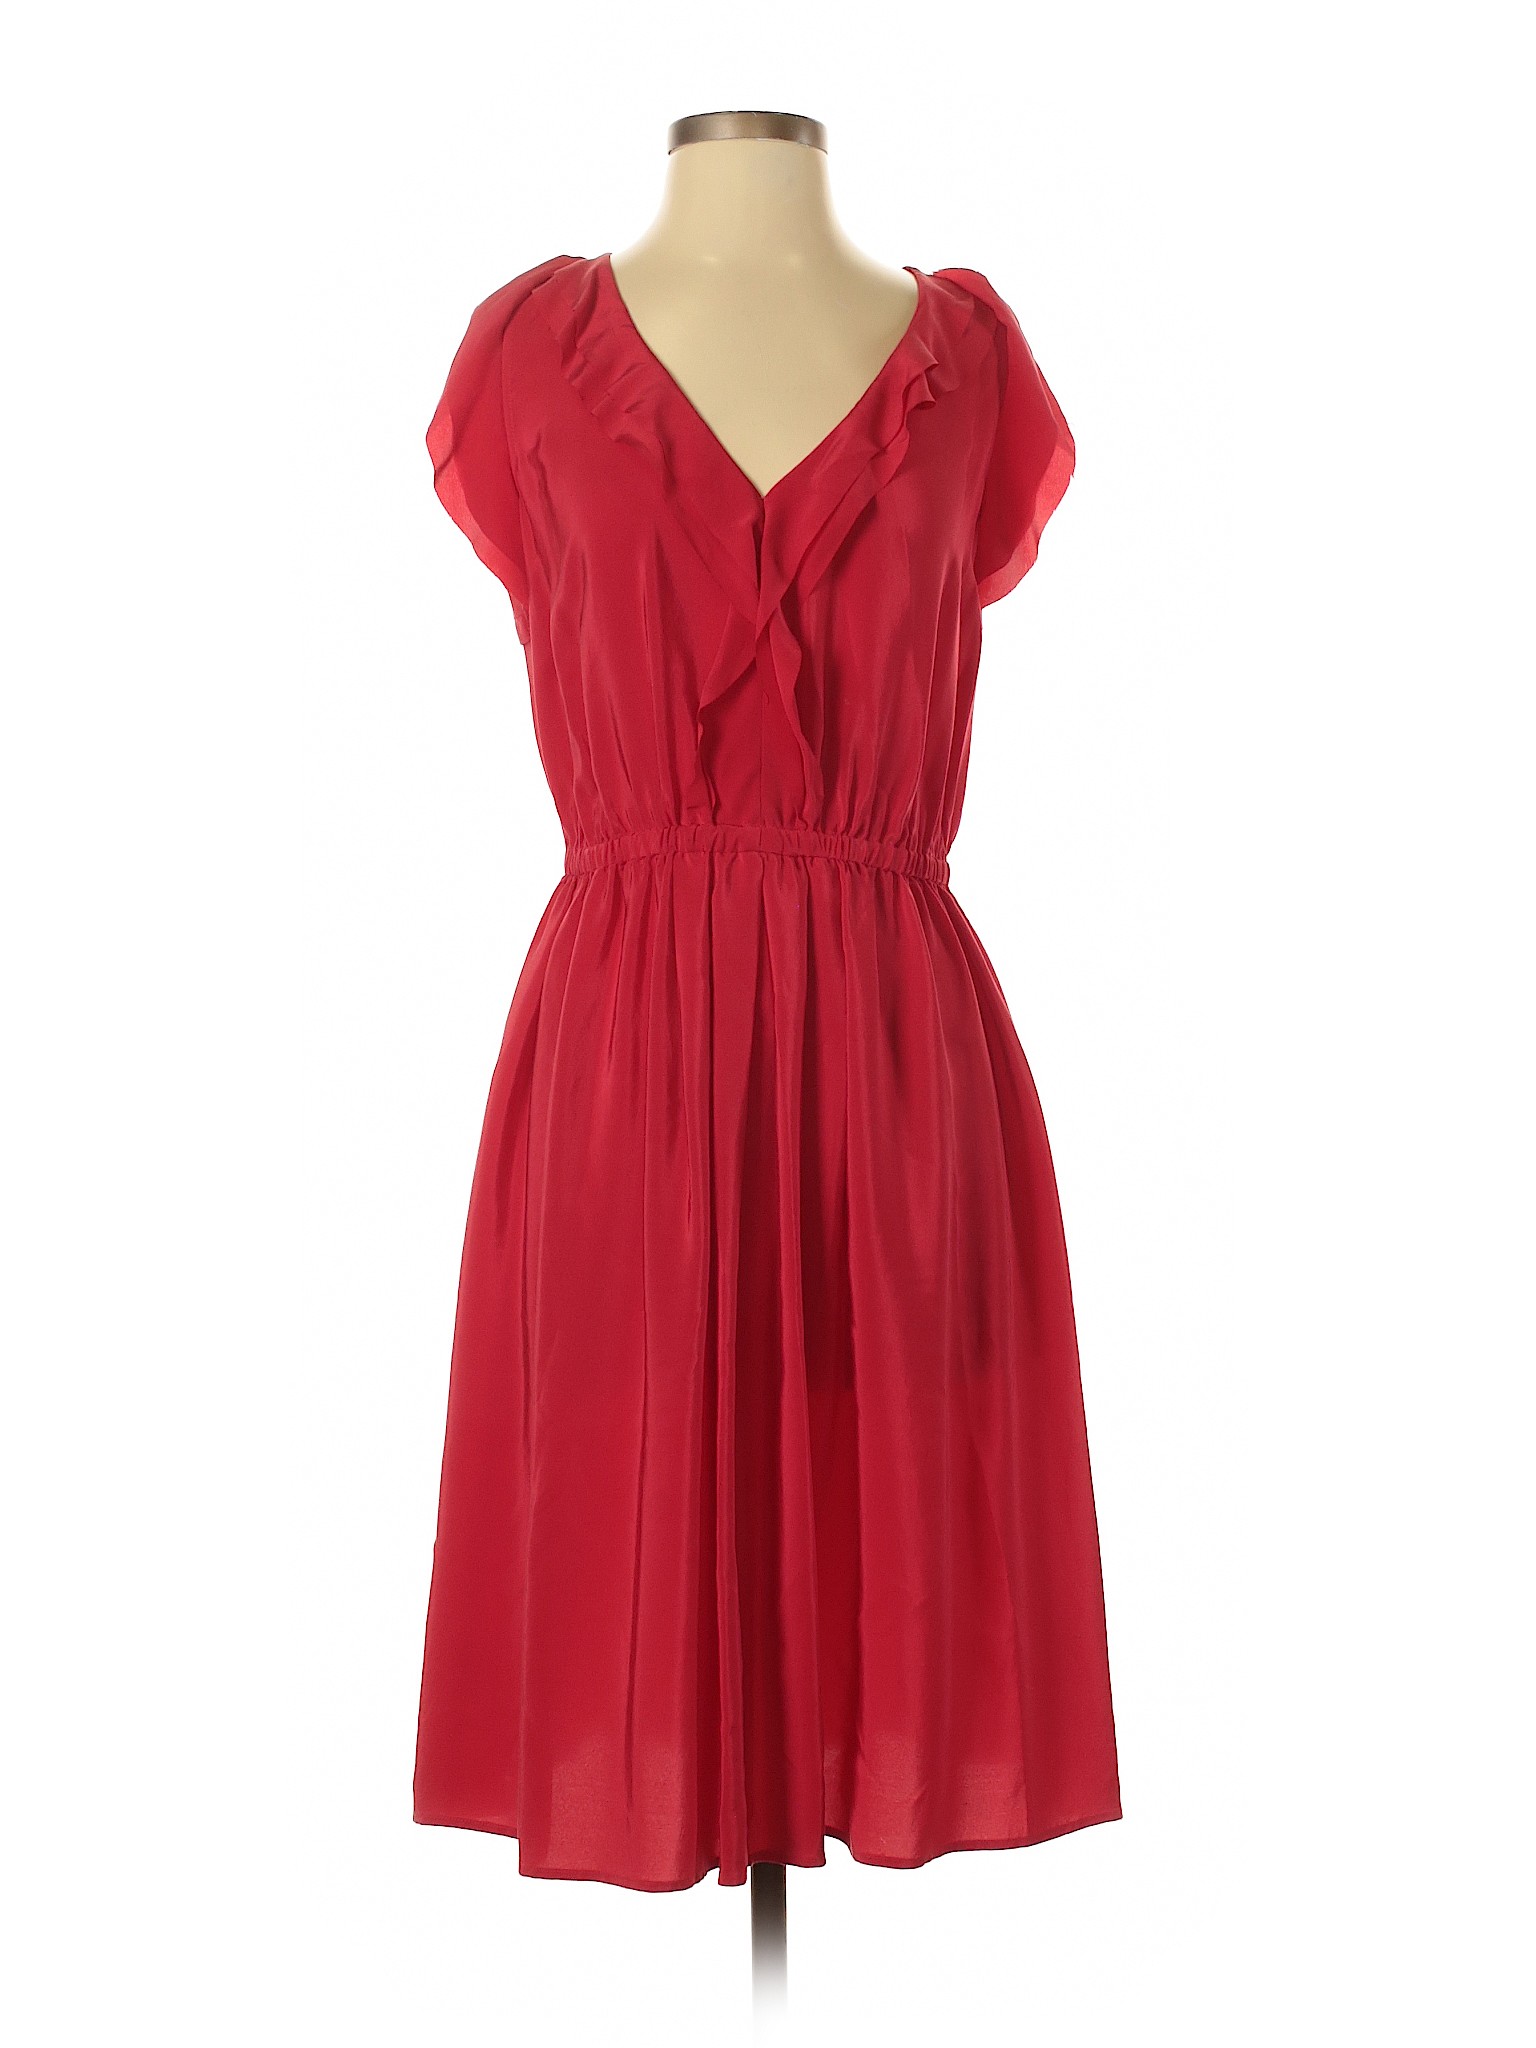 Ann Taylor LOFT Women Red Casual Dress 4 | eBay